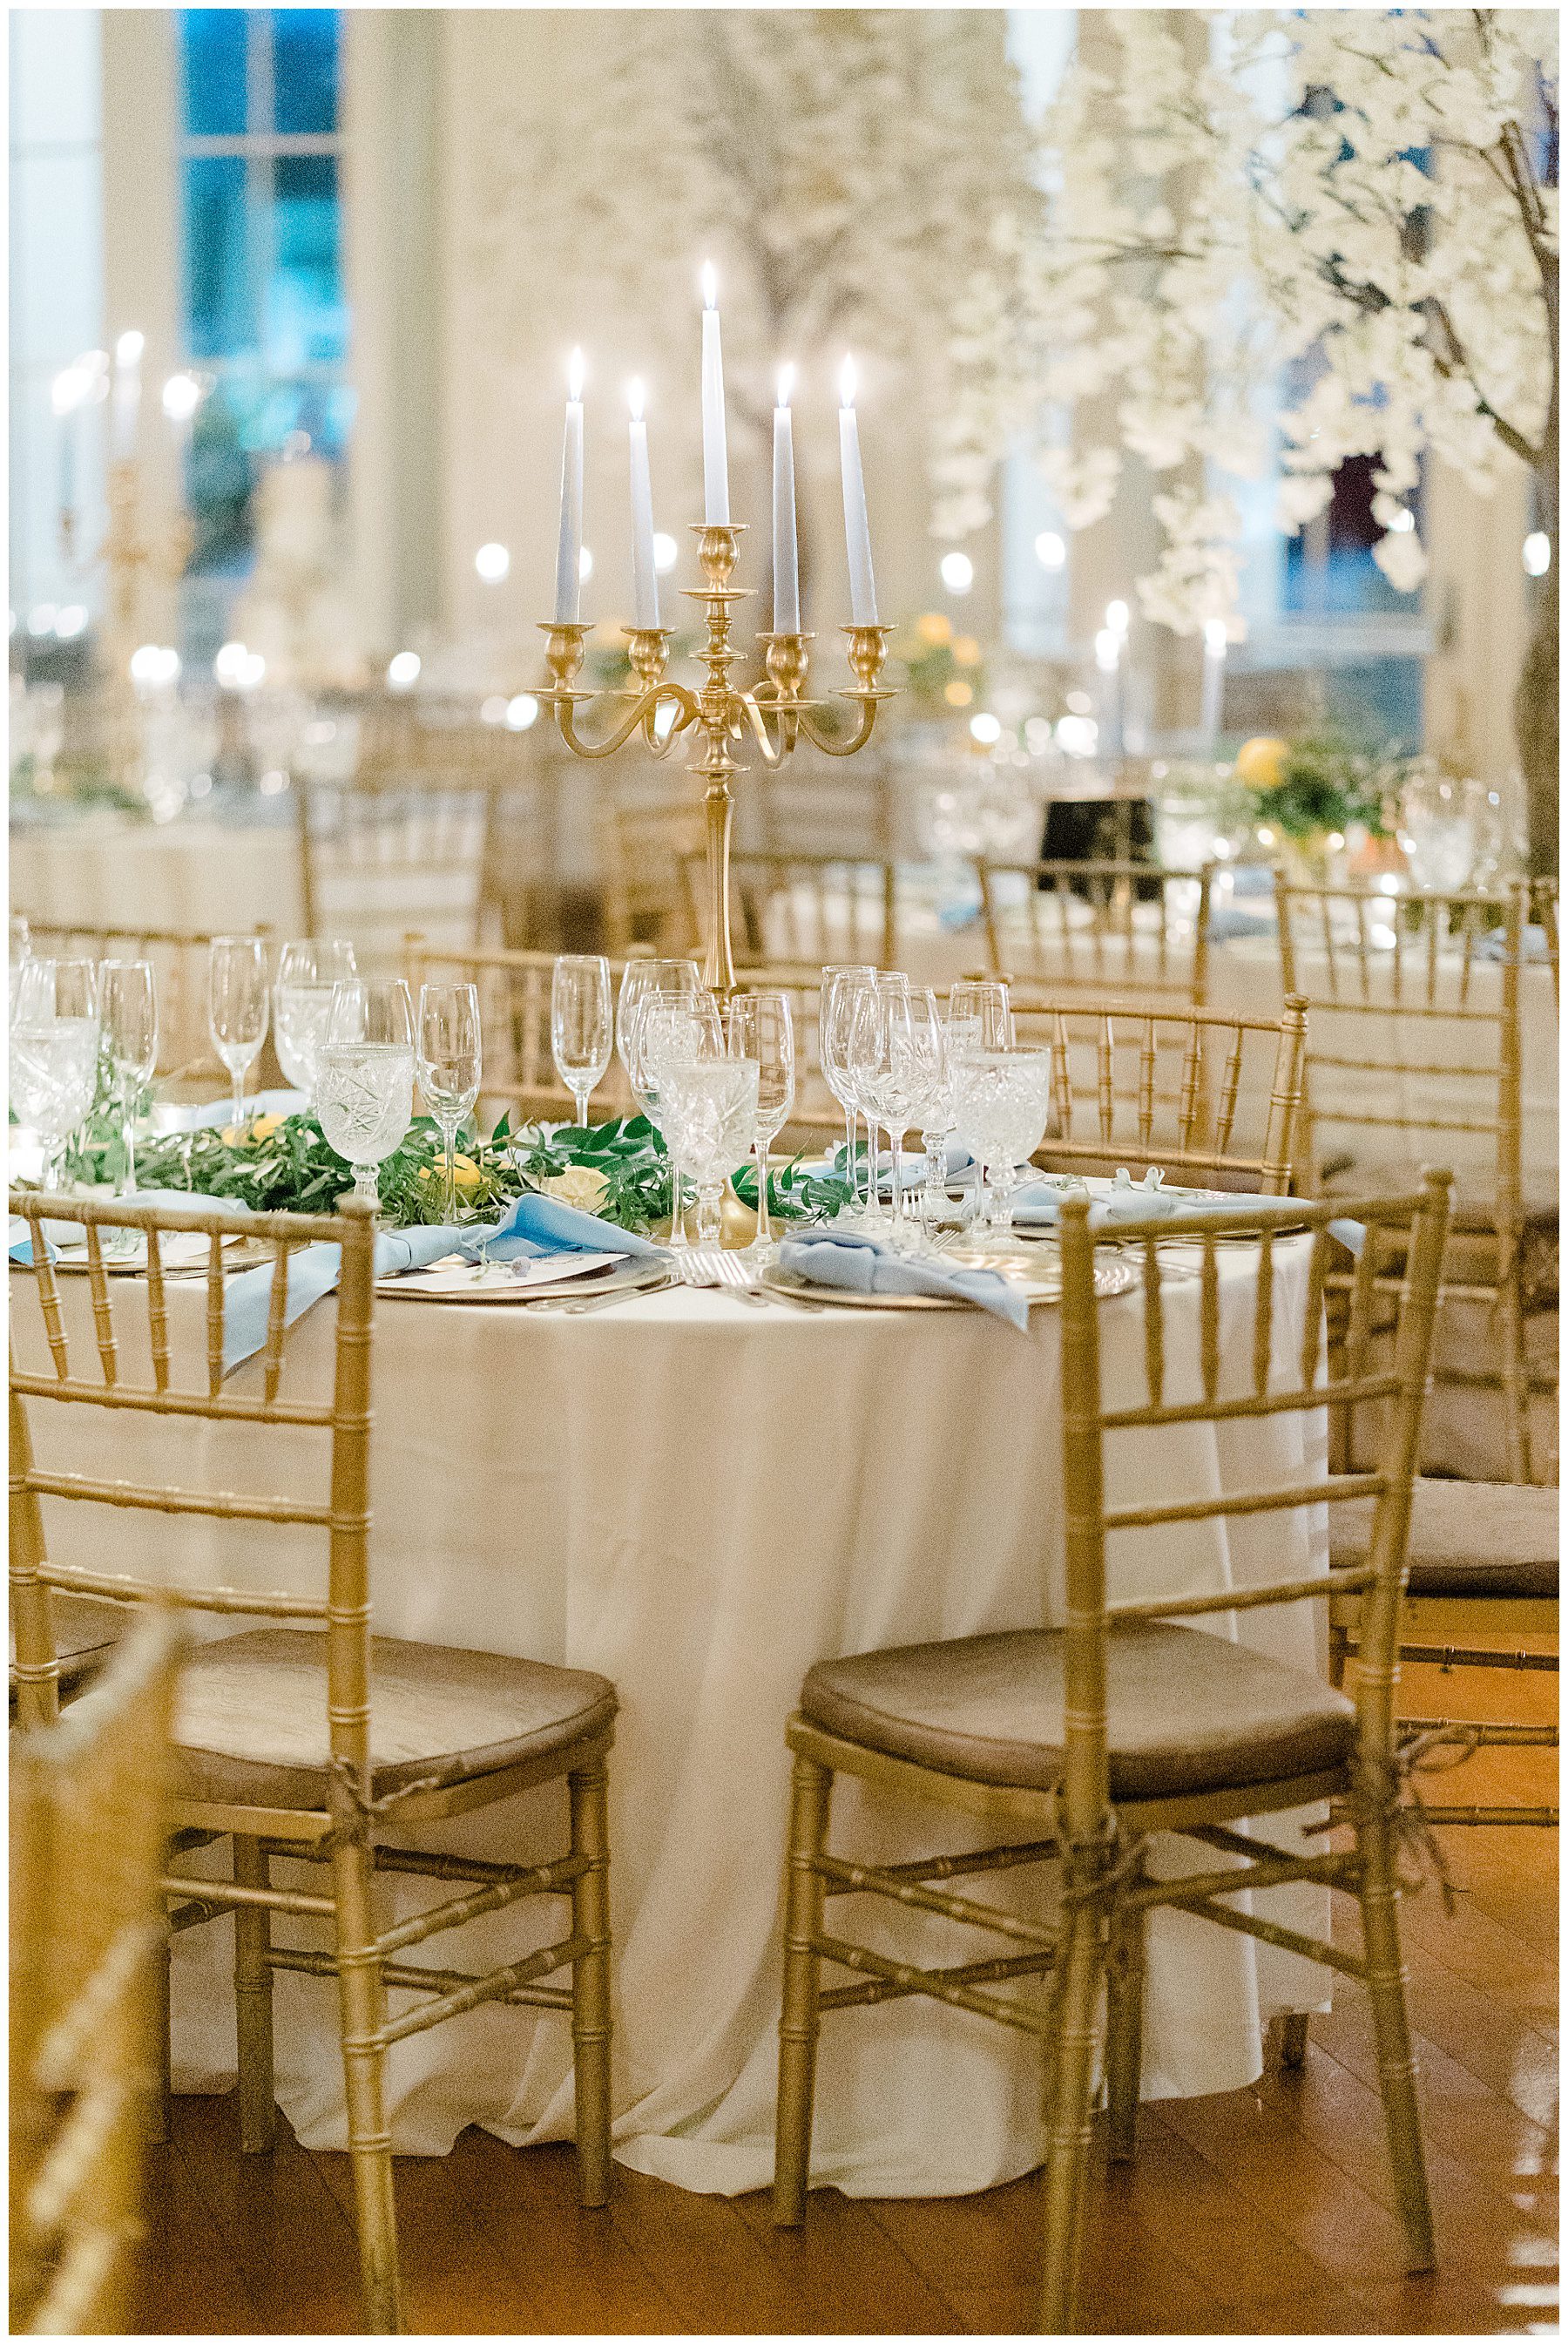 Luxurious Ryland Inn Grand Ballroom Wedding reception details